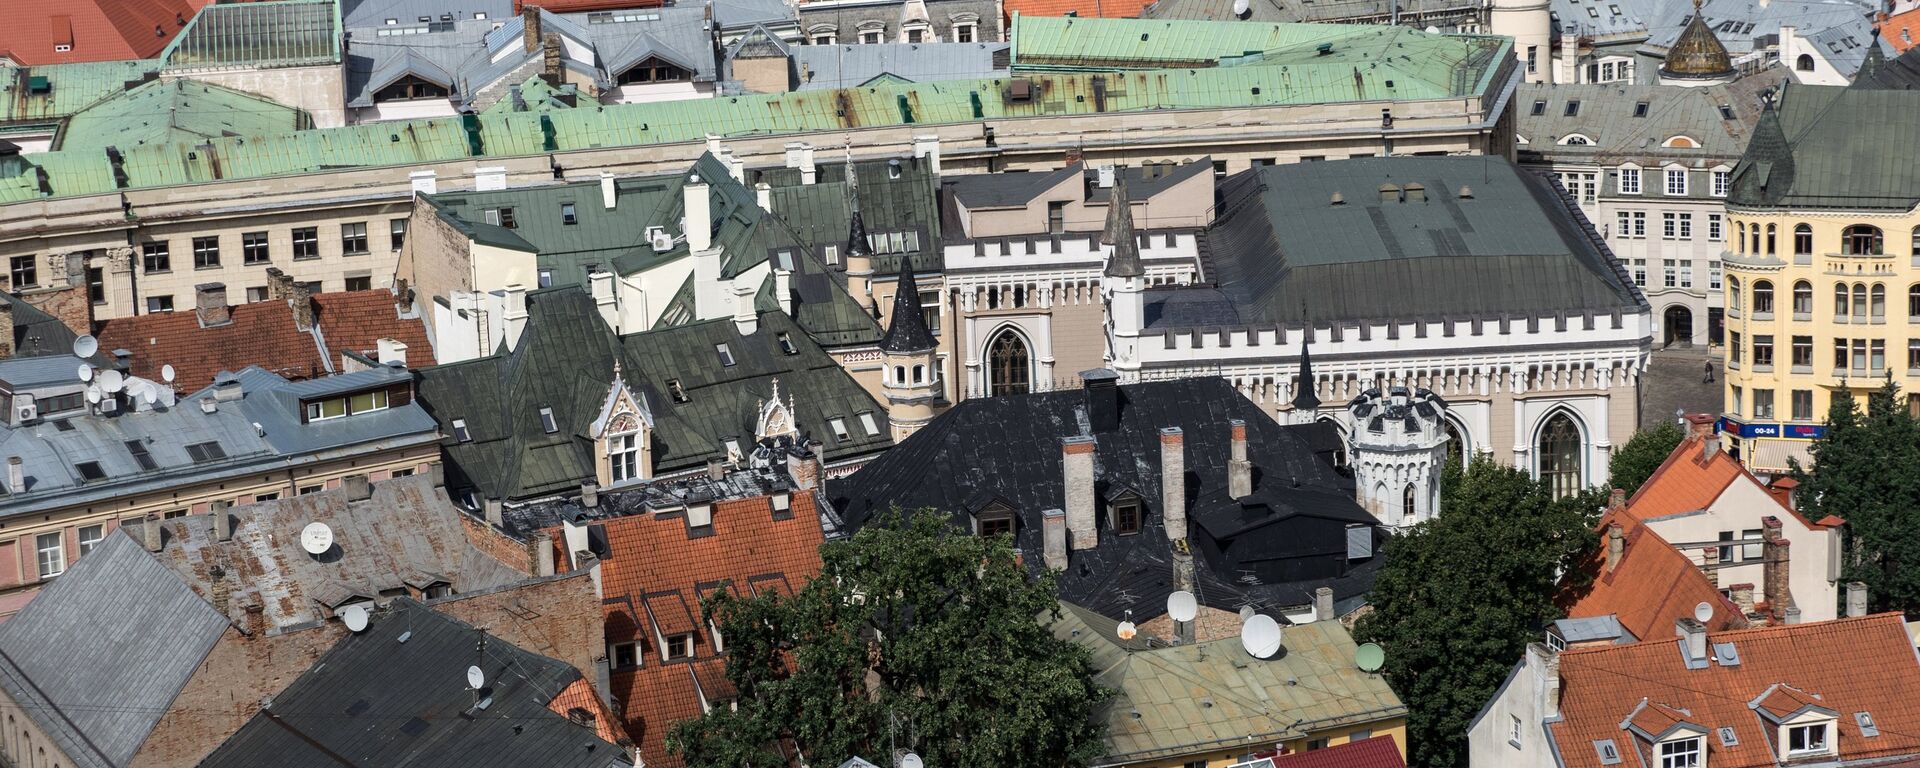 Крыши старого города в Риге в Латвии - Sputnik Латвия, 1920, 13.06.2021